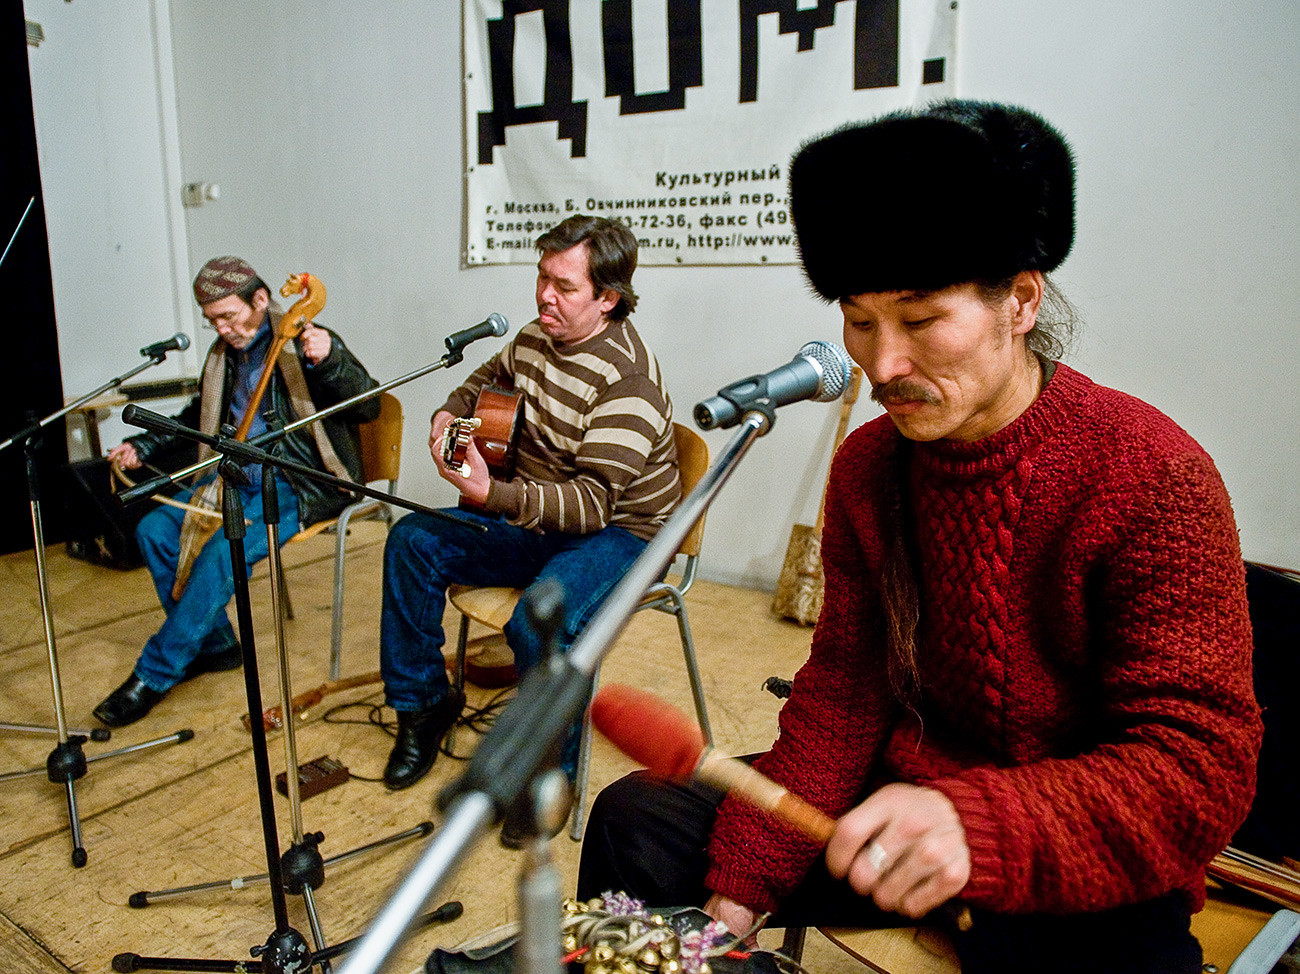 Člani tuvinske skupine Huun-Huur-Tu, od leve proti desni, Kaigal-ol Hovalig, Sajan Bapak in Aleksej Sariglar med vajo pred koncertom v klubu 